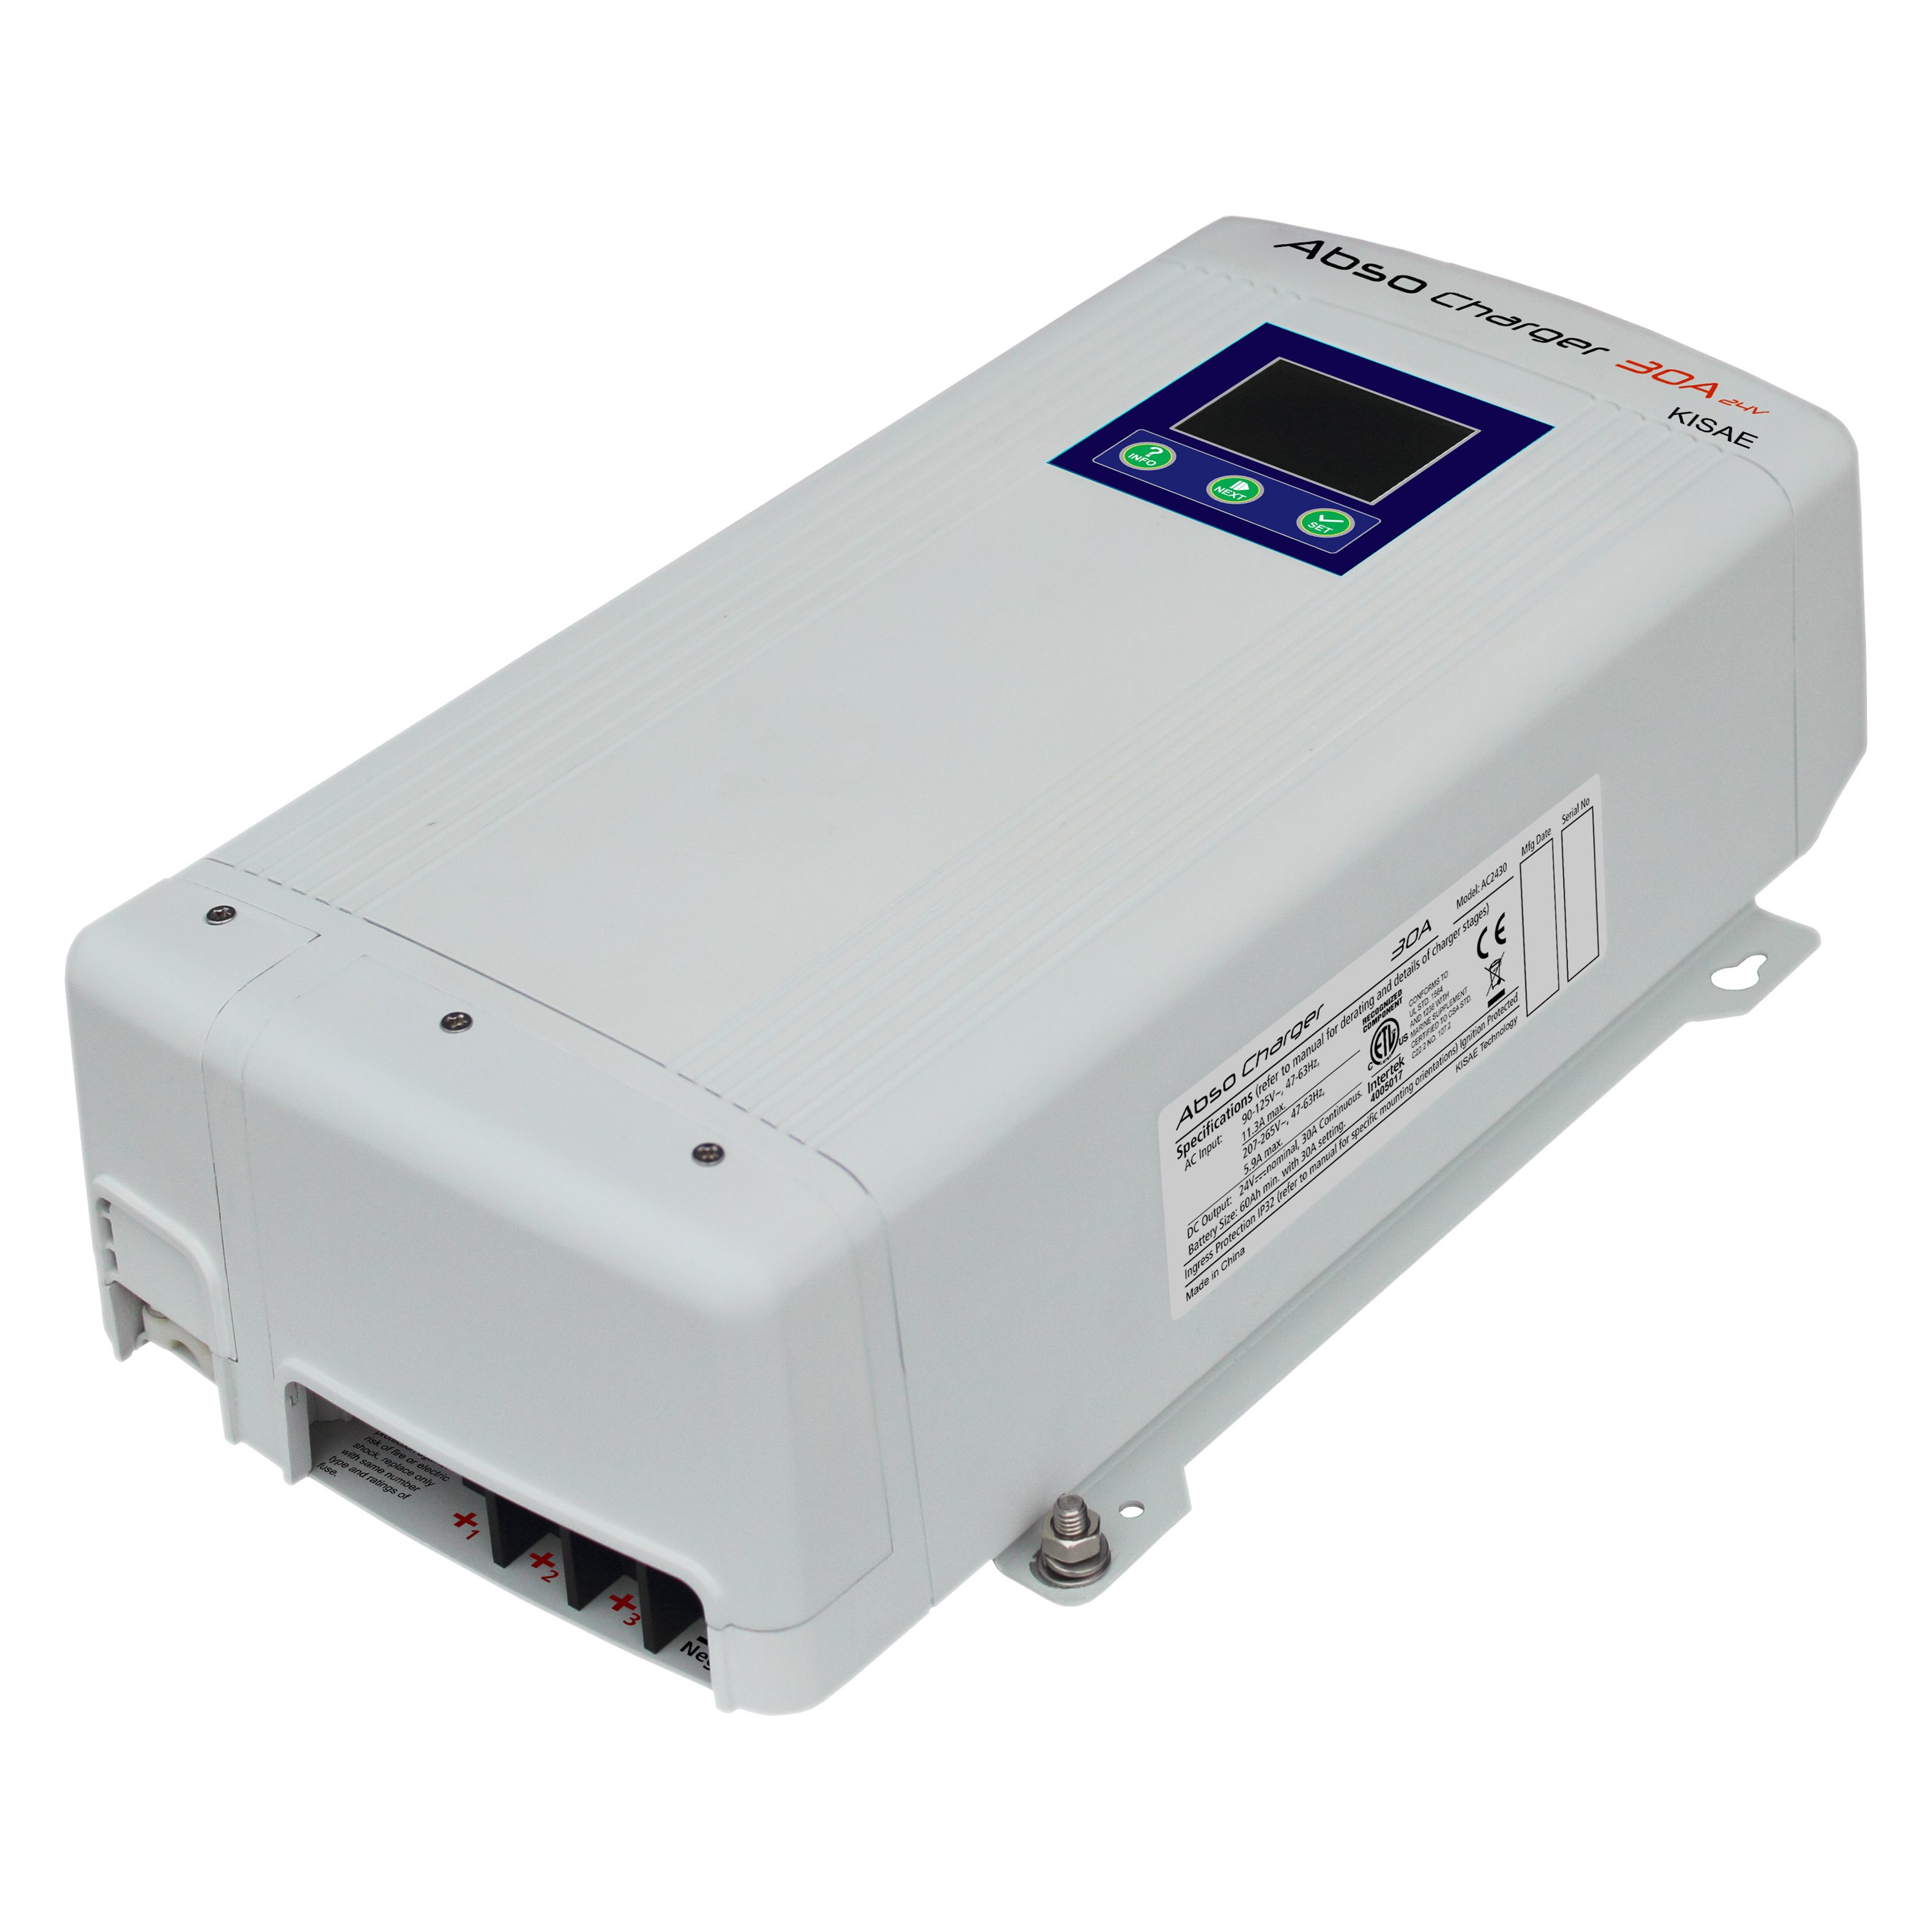 Battery Charger lifepo4 12в. Dmt1250 Abso Kisae DC-DC зарядное устройство ￼. Kisae Technology hs800-00. 3 Bank Battery Analyzer for DPH, gph.